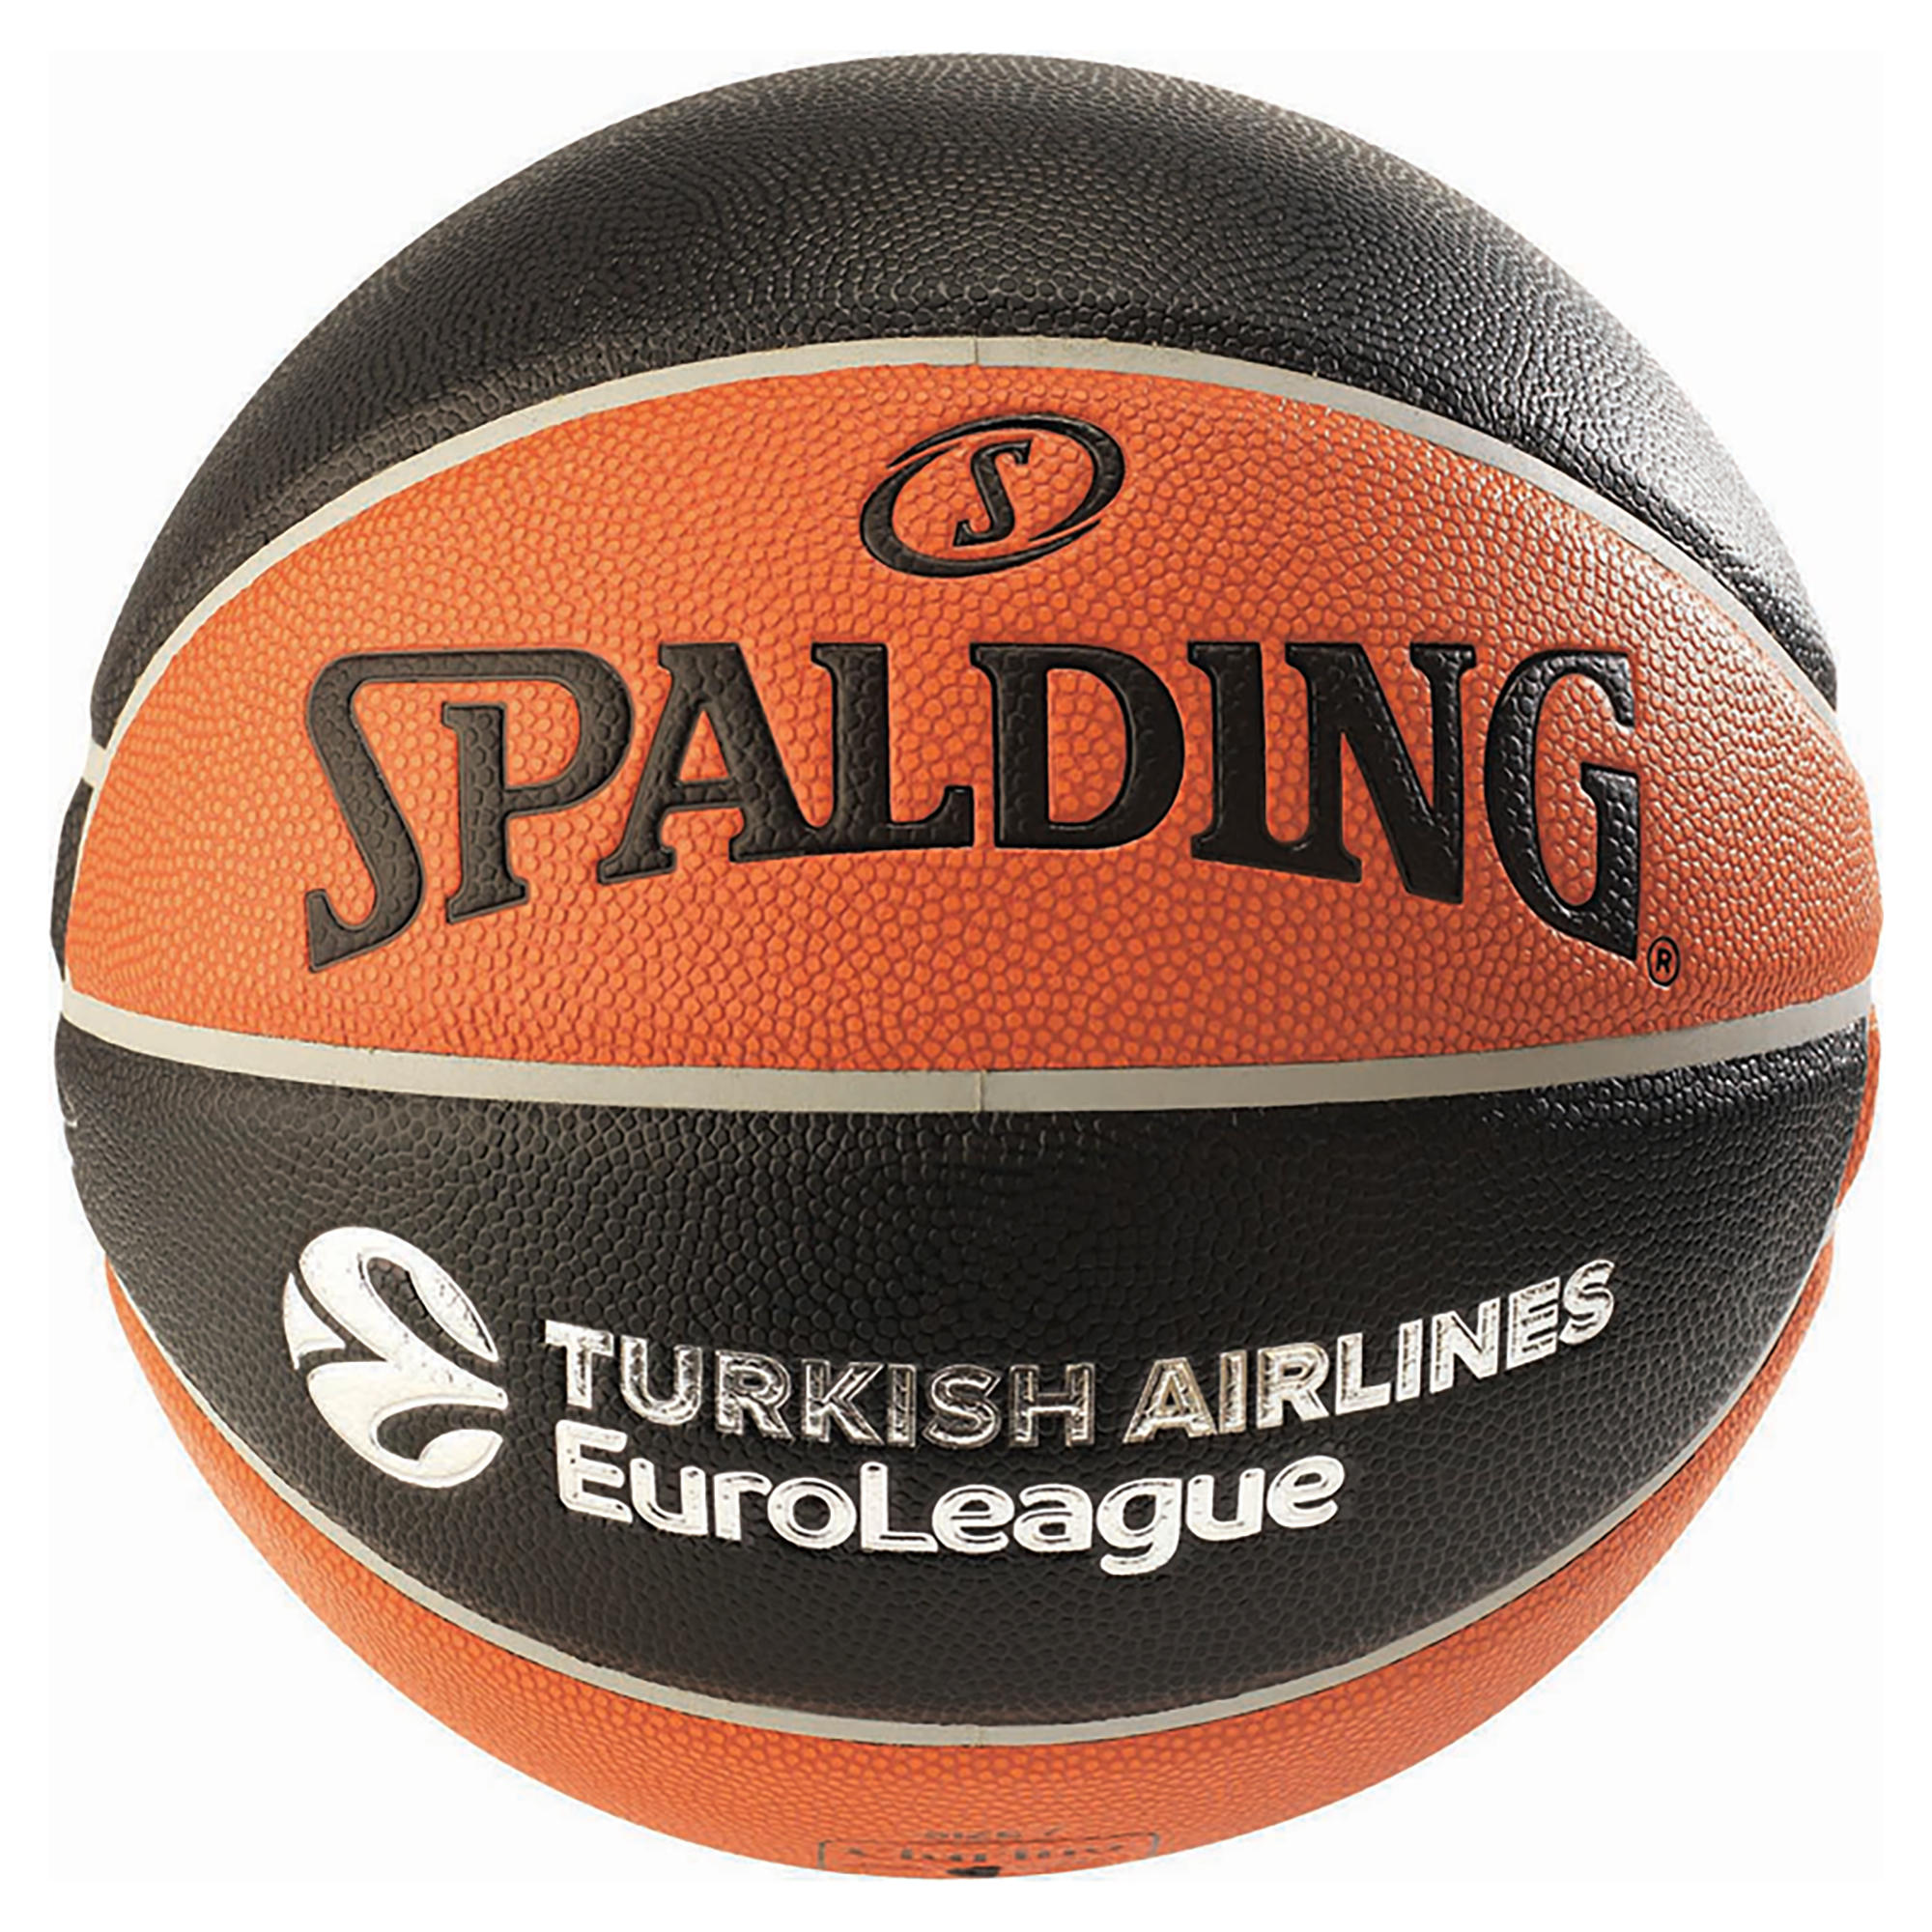 Basketball Tf1000 Euroleague Spalding Grosse 7 Fur Jungen Und Erwachsene Spalding Decathlon